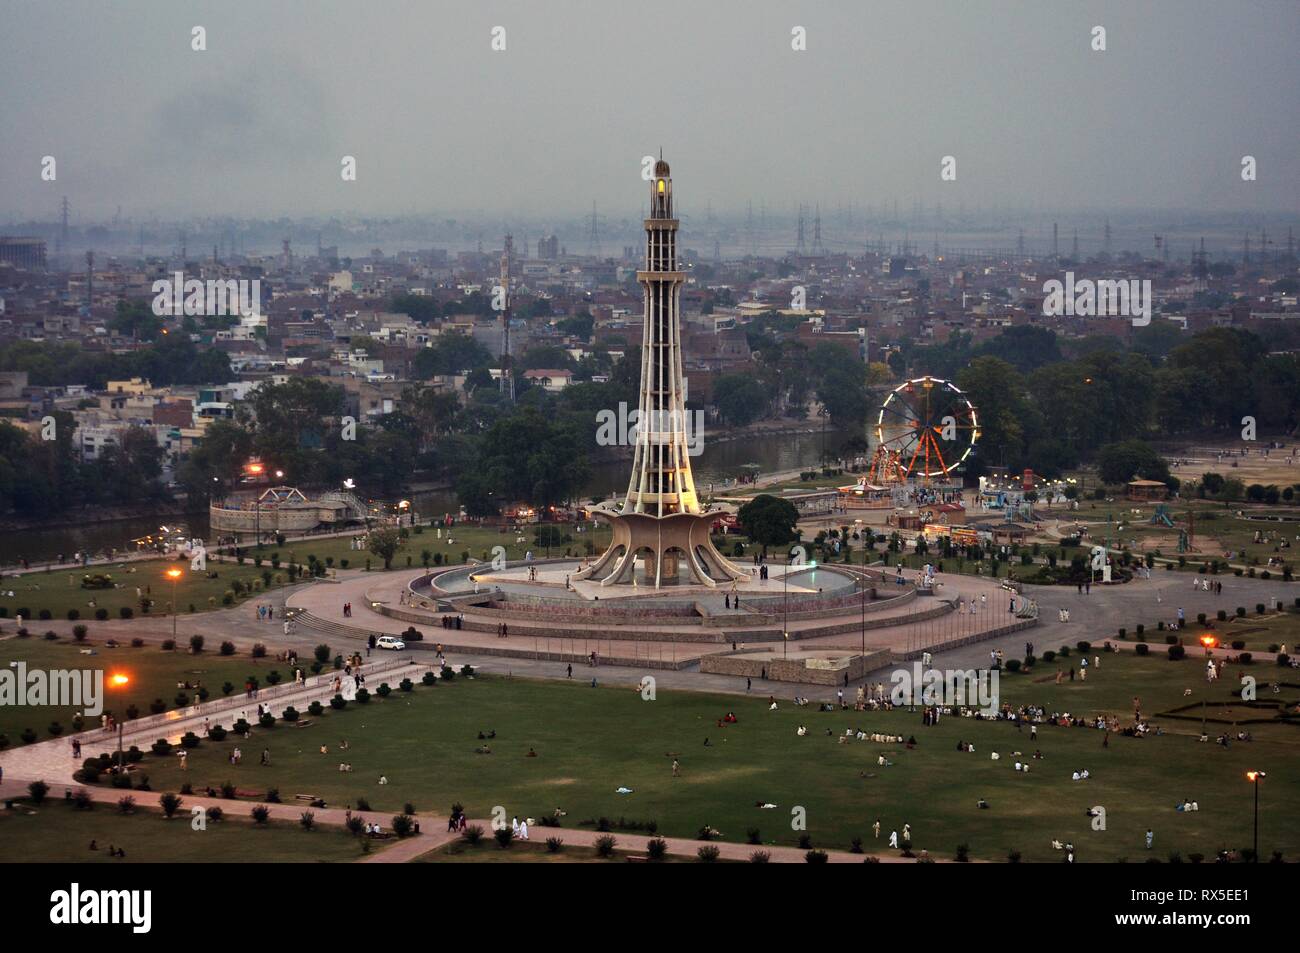 Minar e Pakistan Stockfoto